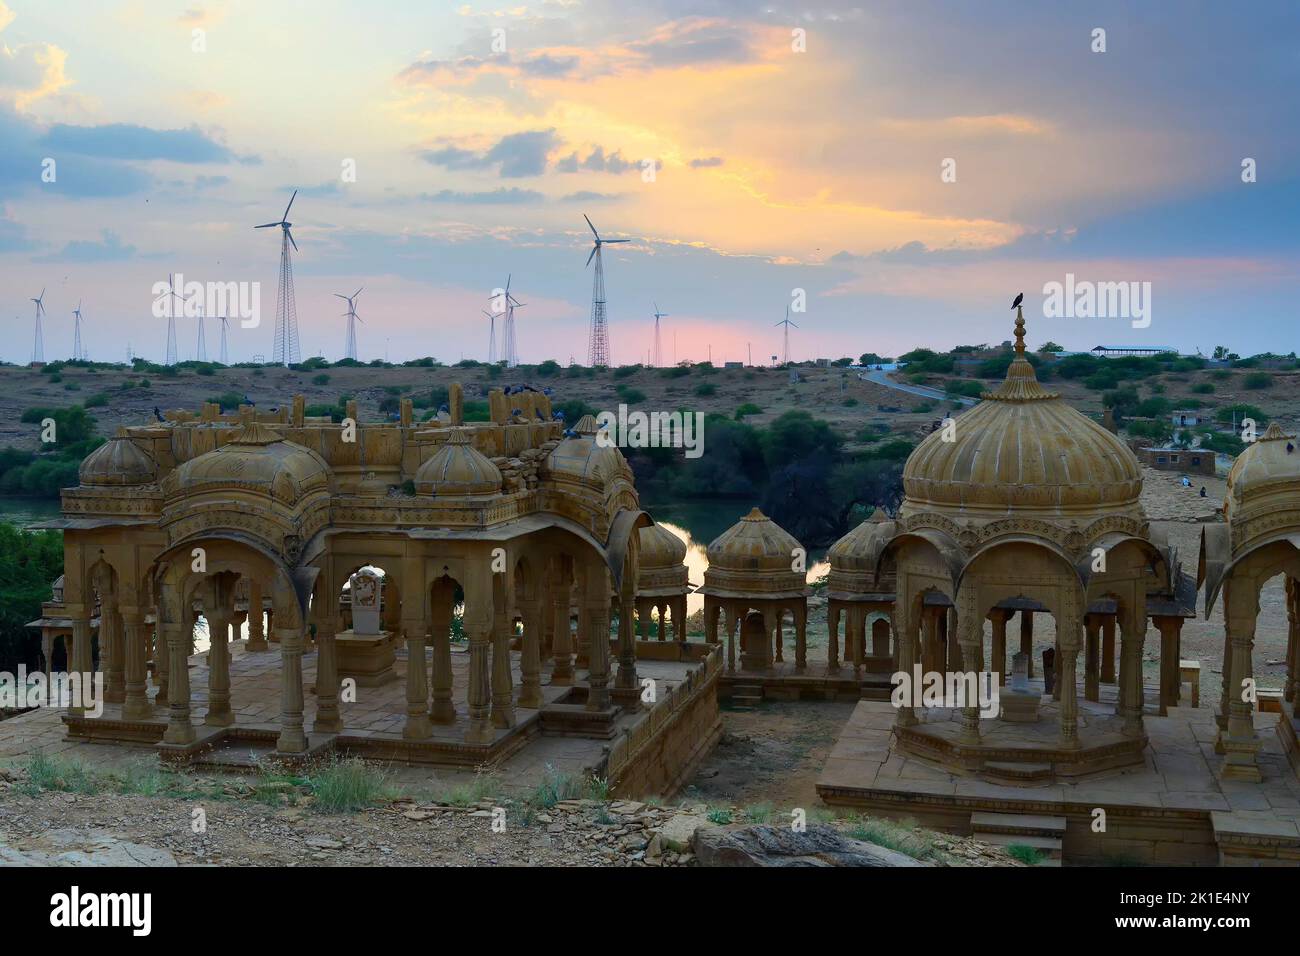 Bada Bagh o Barabagh, significa jardín grande, es un complejo del jardín en Jaisalmer, Rajasthan, India, para los cenotaphs reales de Maharajás o reyes de Jaisalmer. Foto de stock